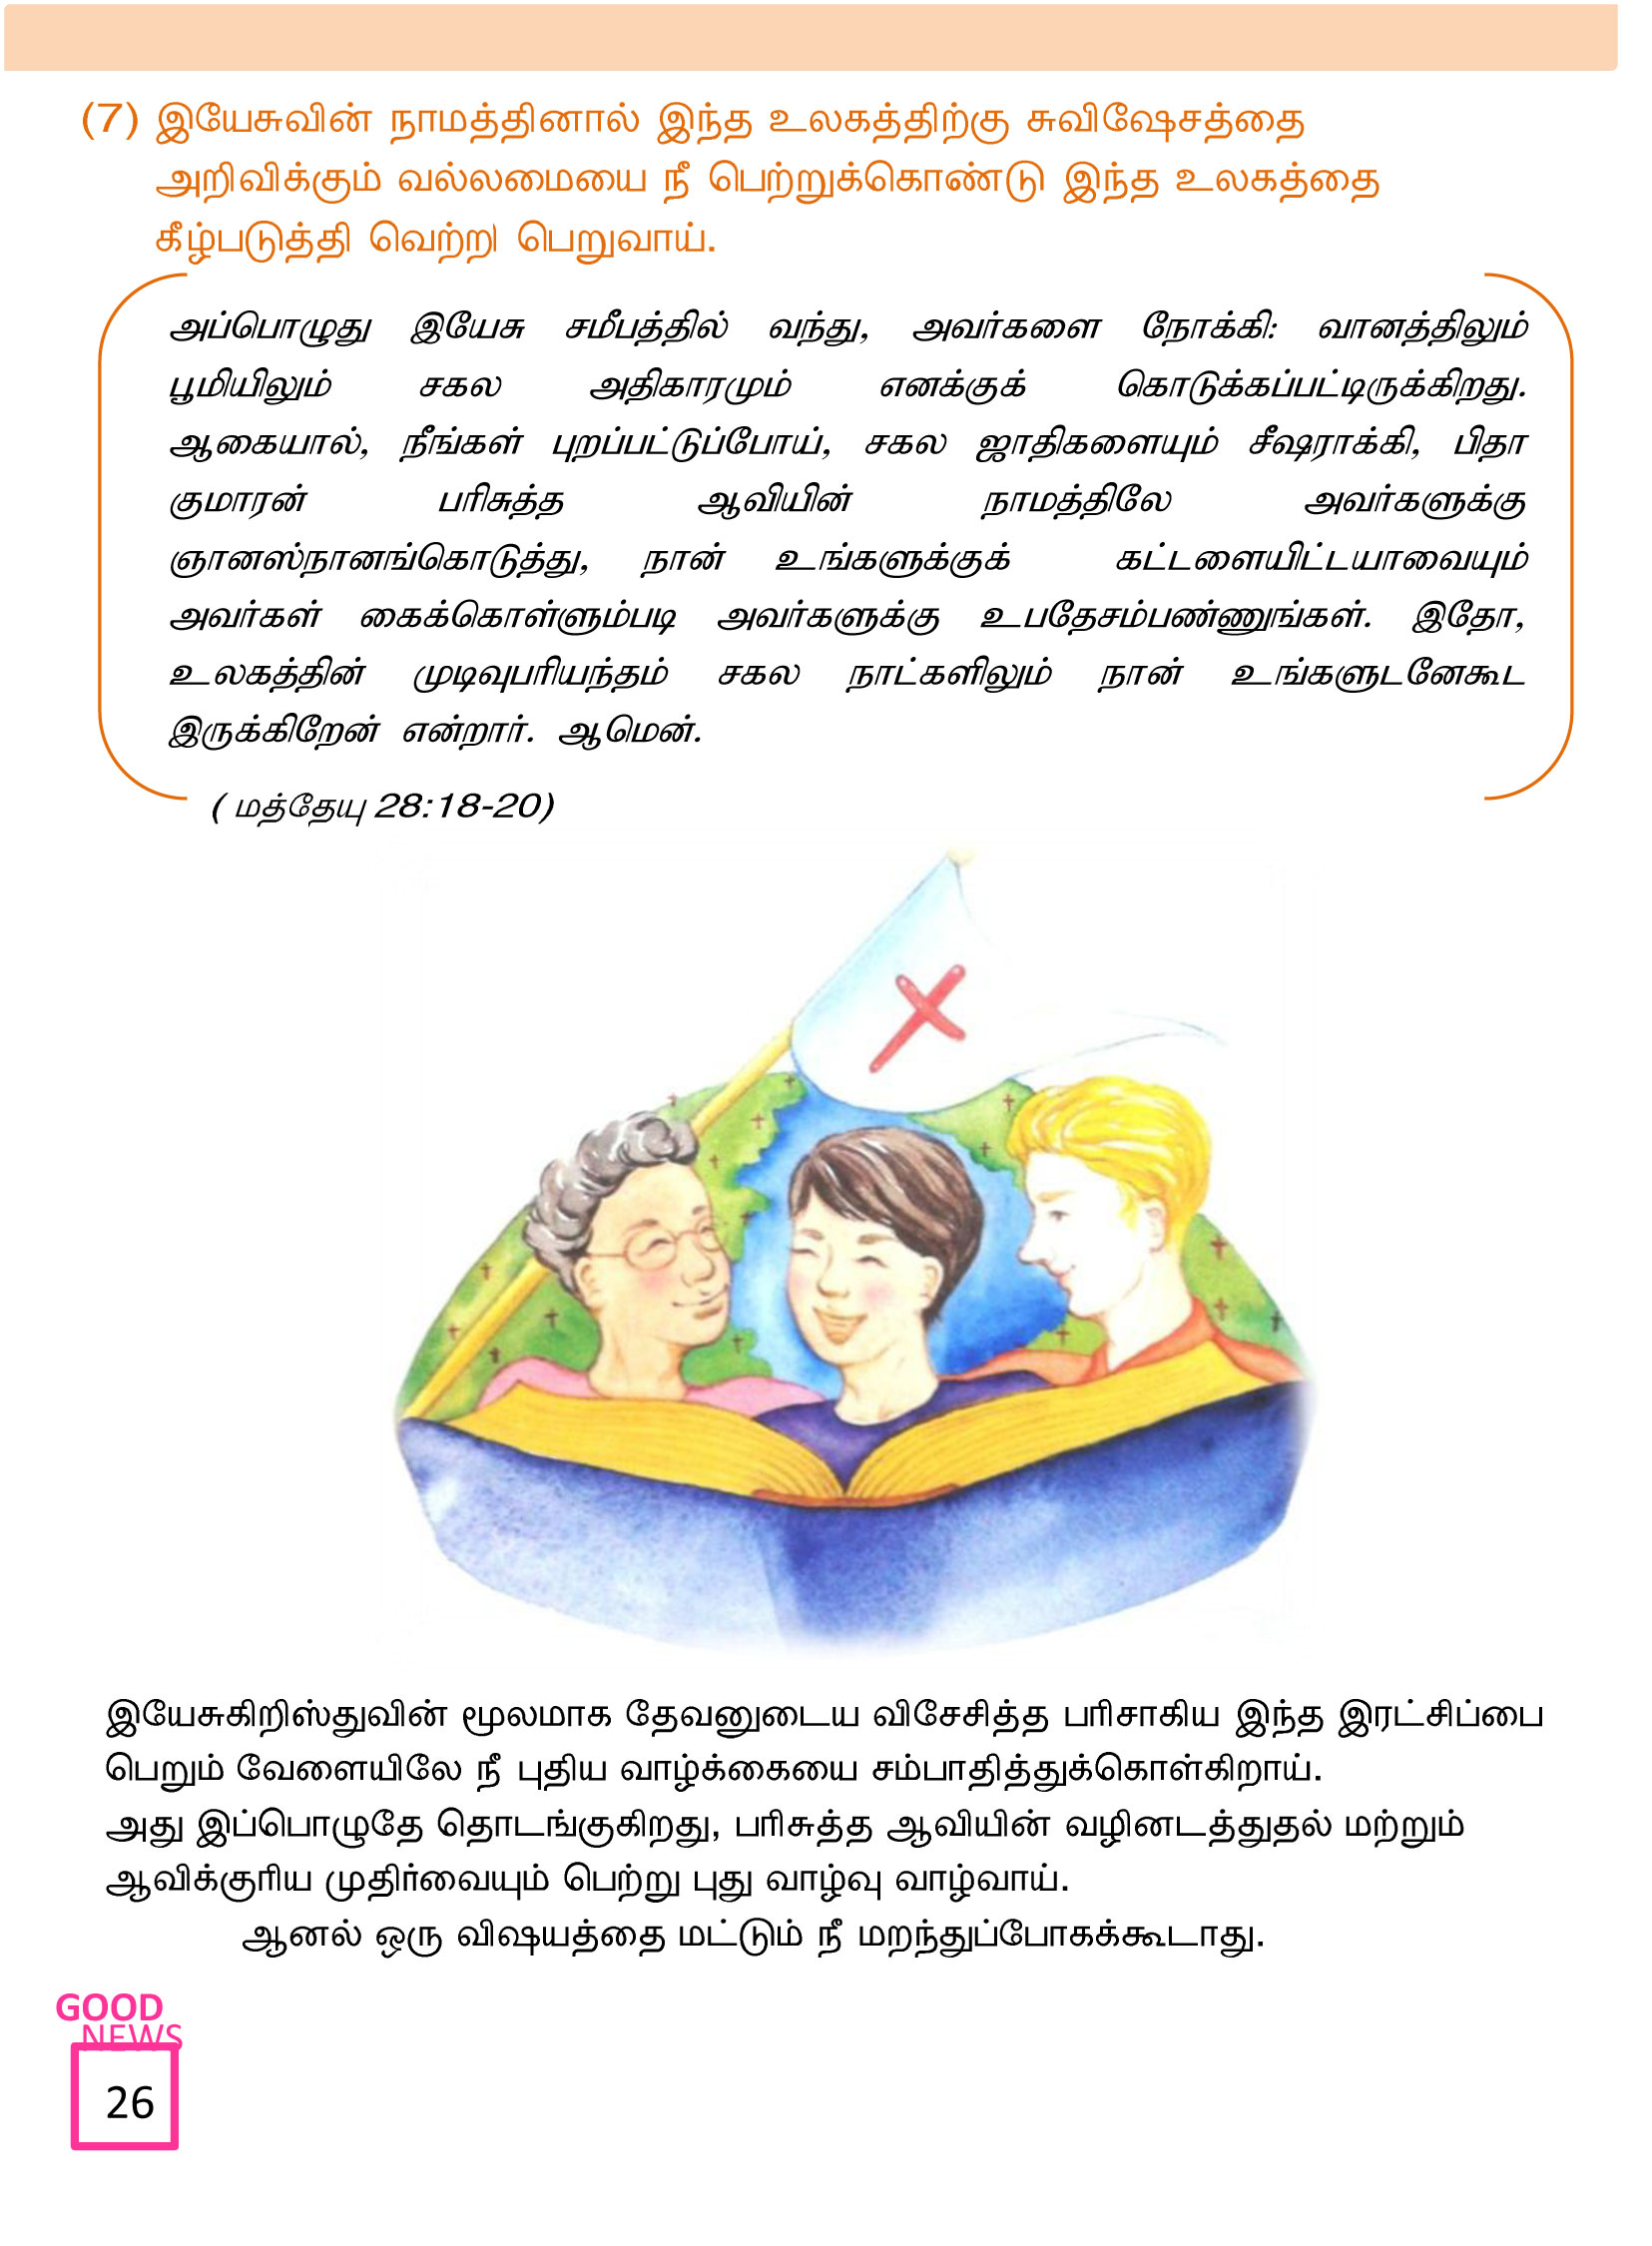 Tamil-Evangelism-Book-Pdf-3-26.jpg